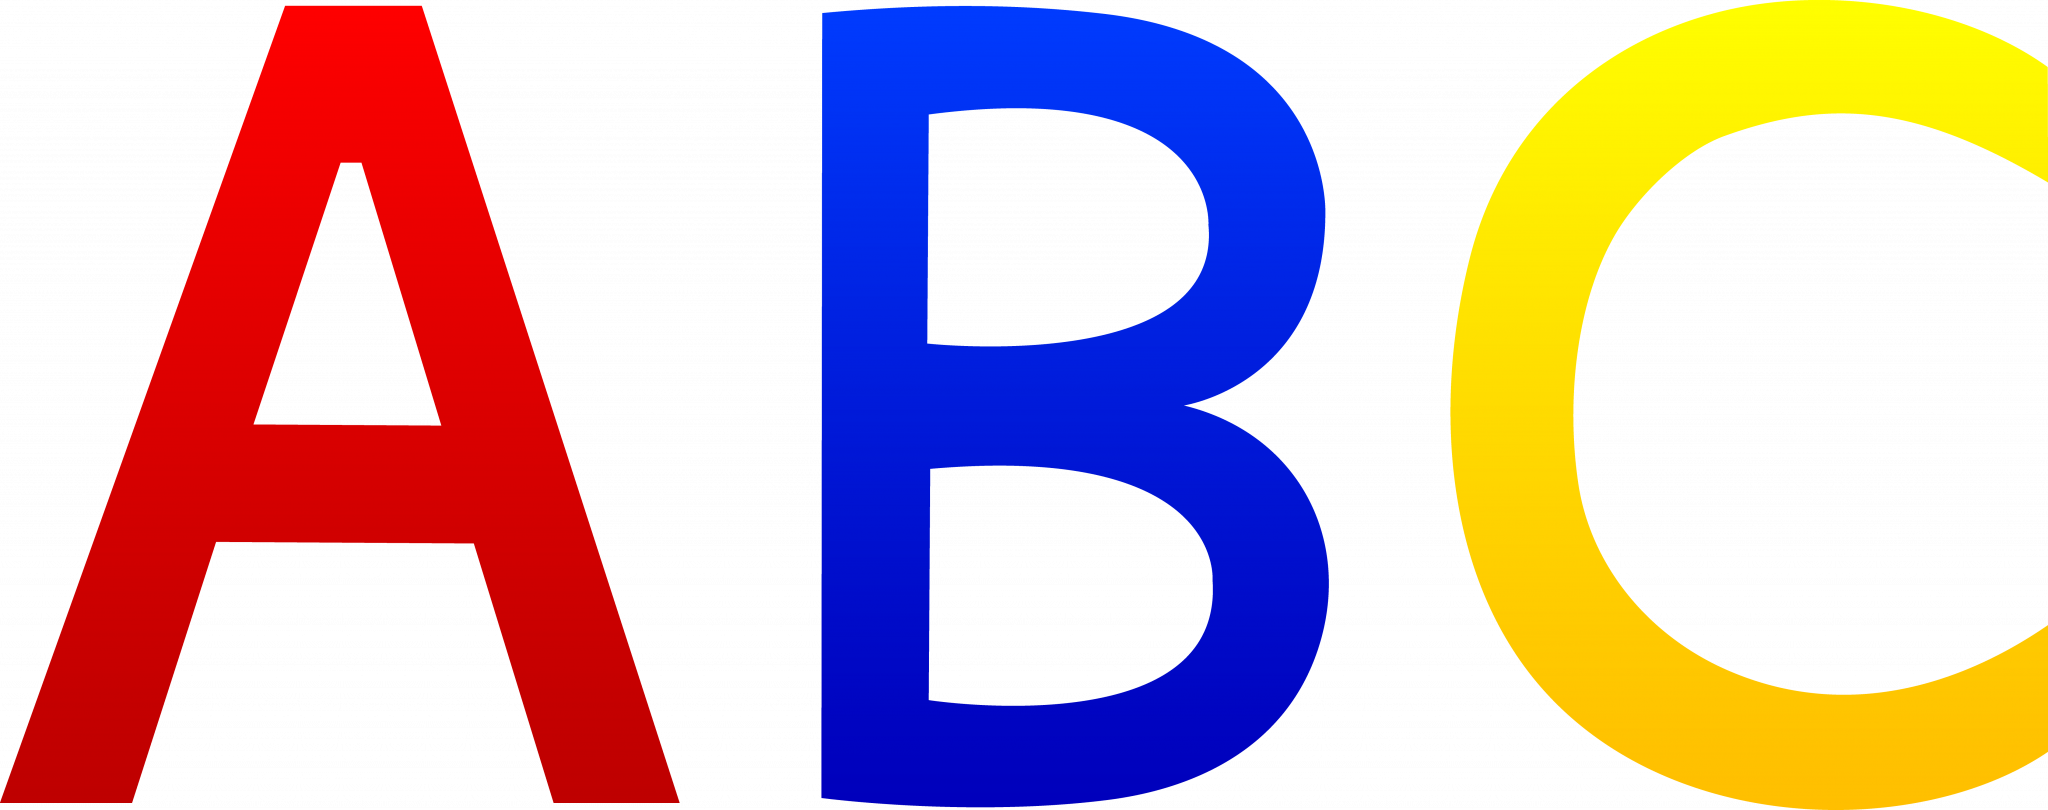 Л a п c и. ABC буквы. Английские буквы на прозрачном фоне. Азбука на прозрачном фоне. ABC надпись.